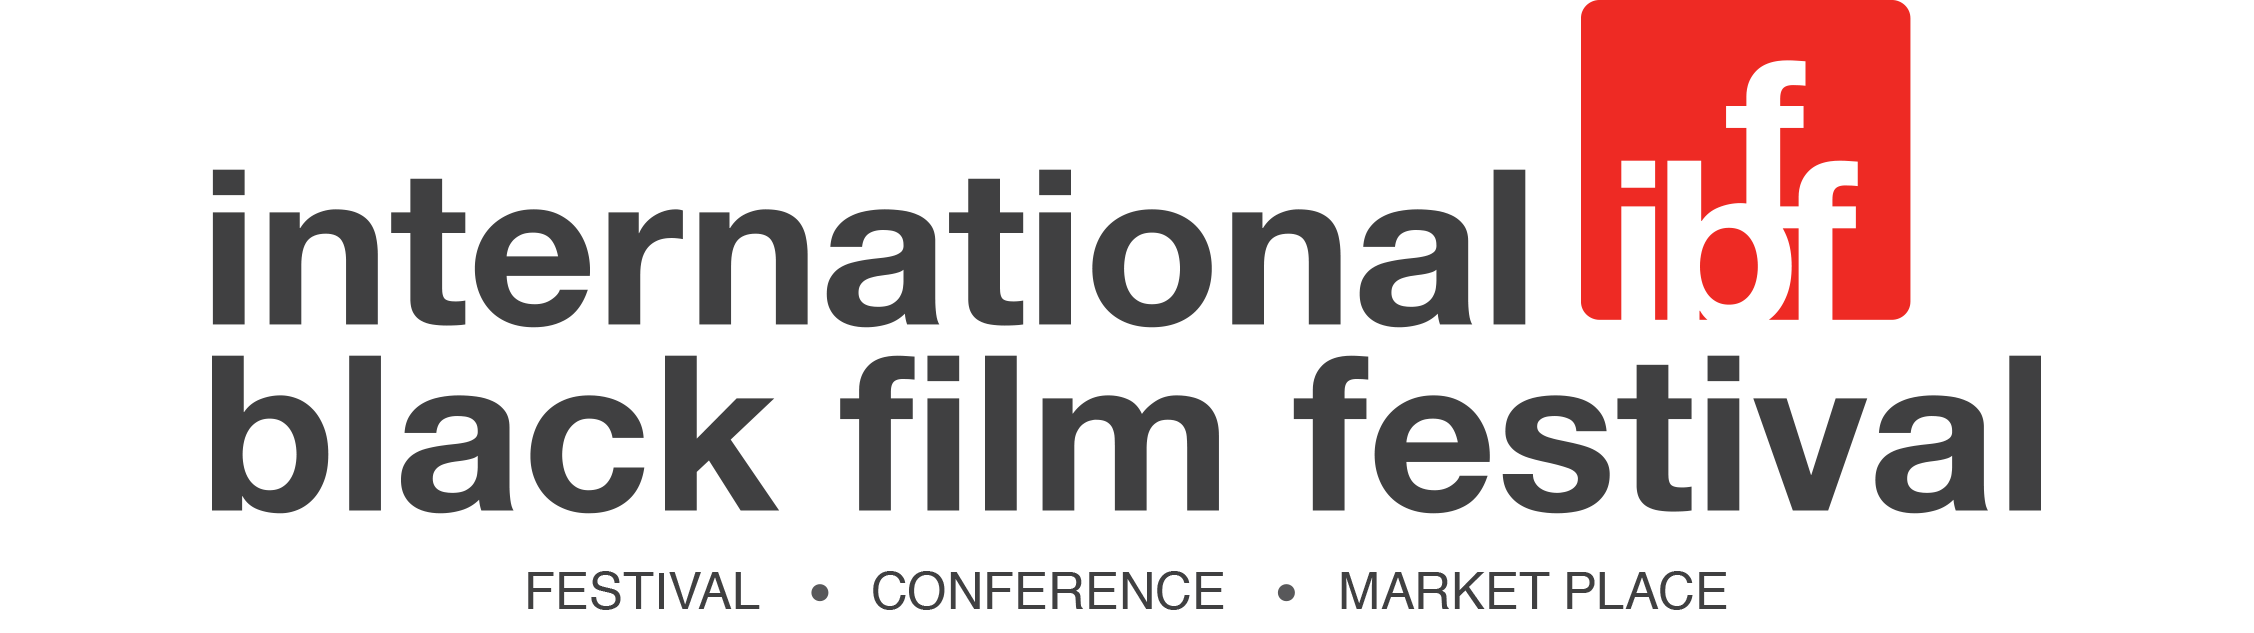 The International Black Film Festival logo